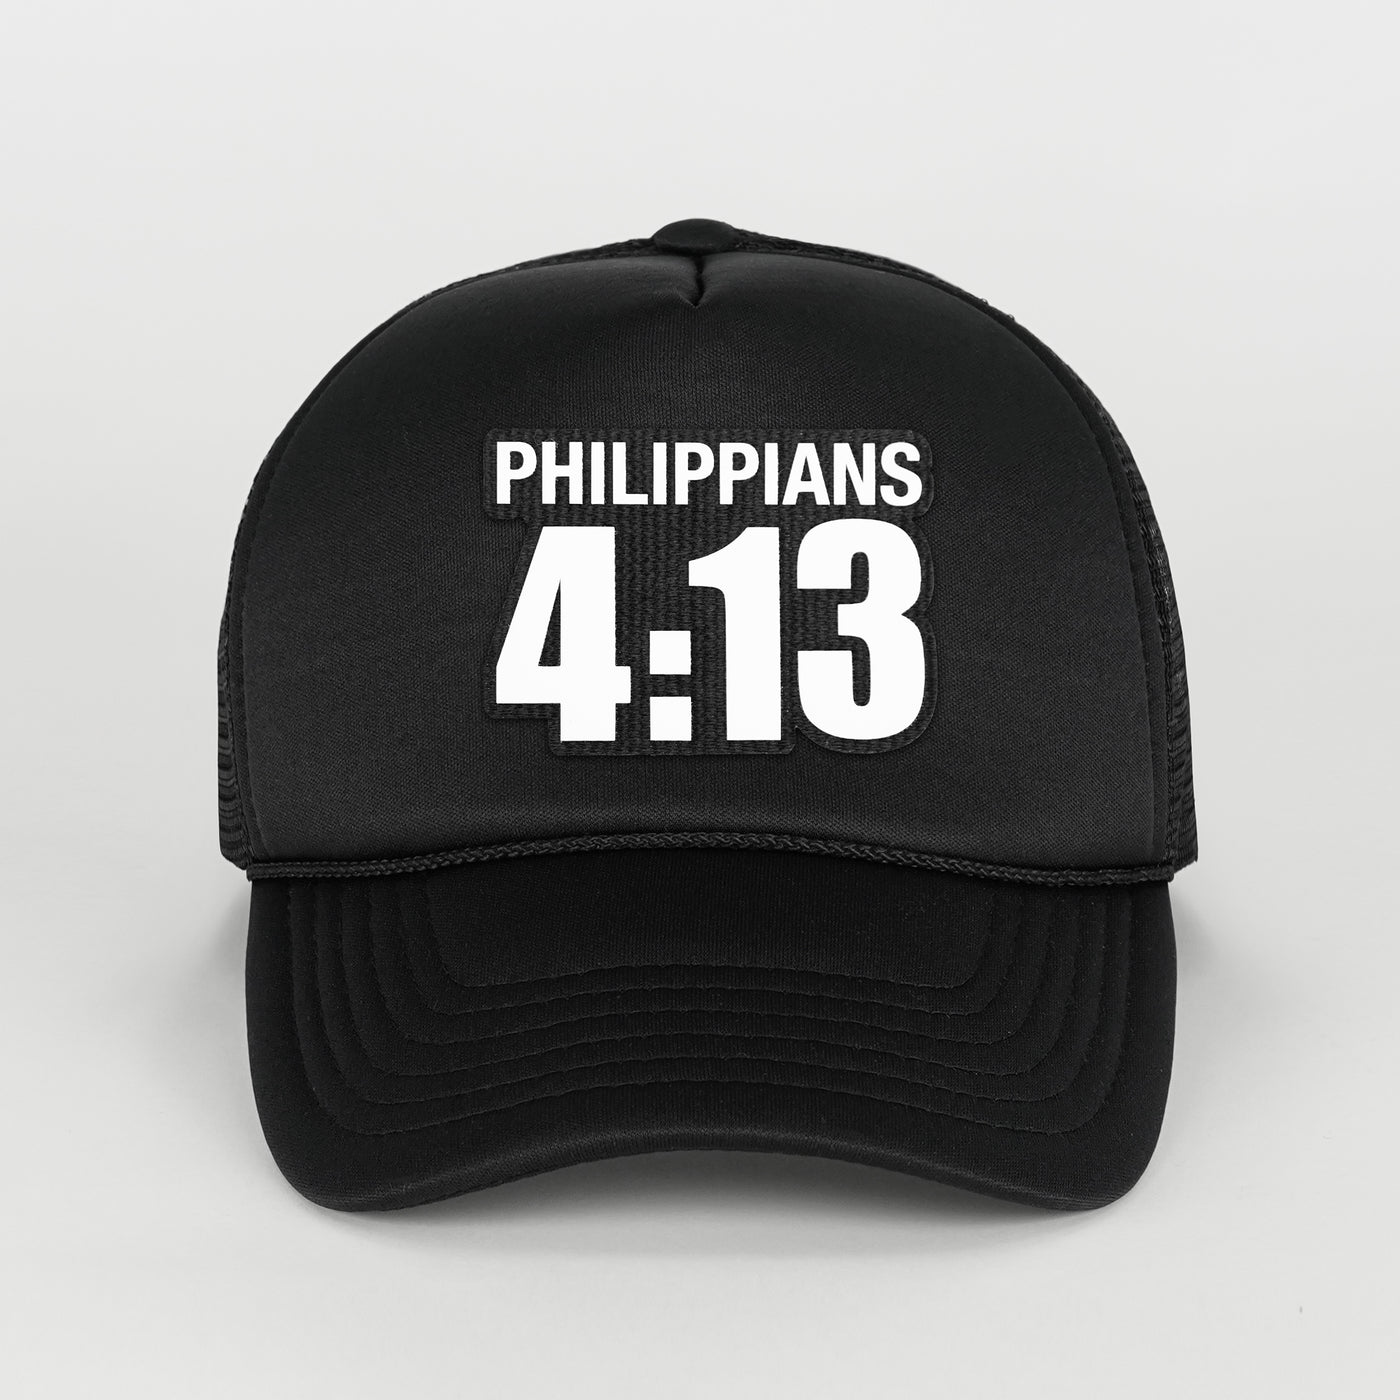 Philippians 4:13 Patch Trucker Hat